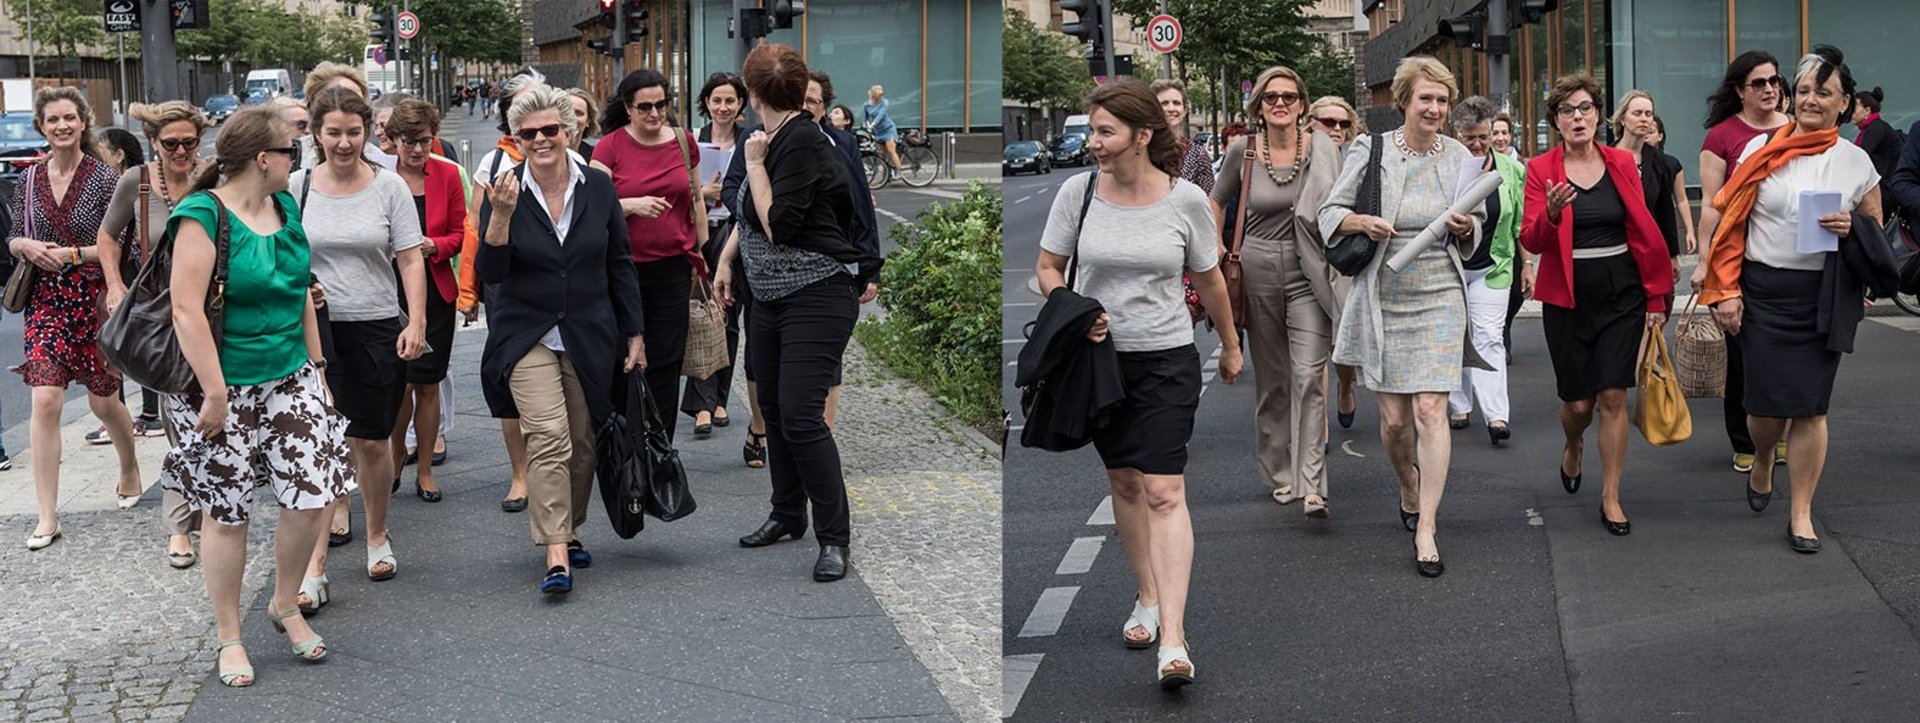 Eine Gruppe von Frauen läuft auf einer Straße in Richtung Kamera. Zum Teil unterhalten sich die Frauen miteinander.